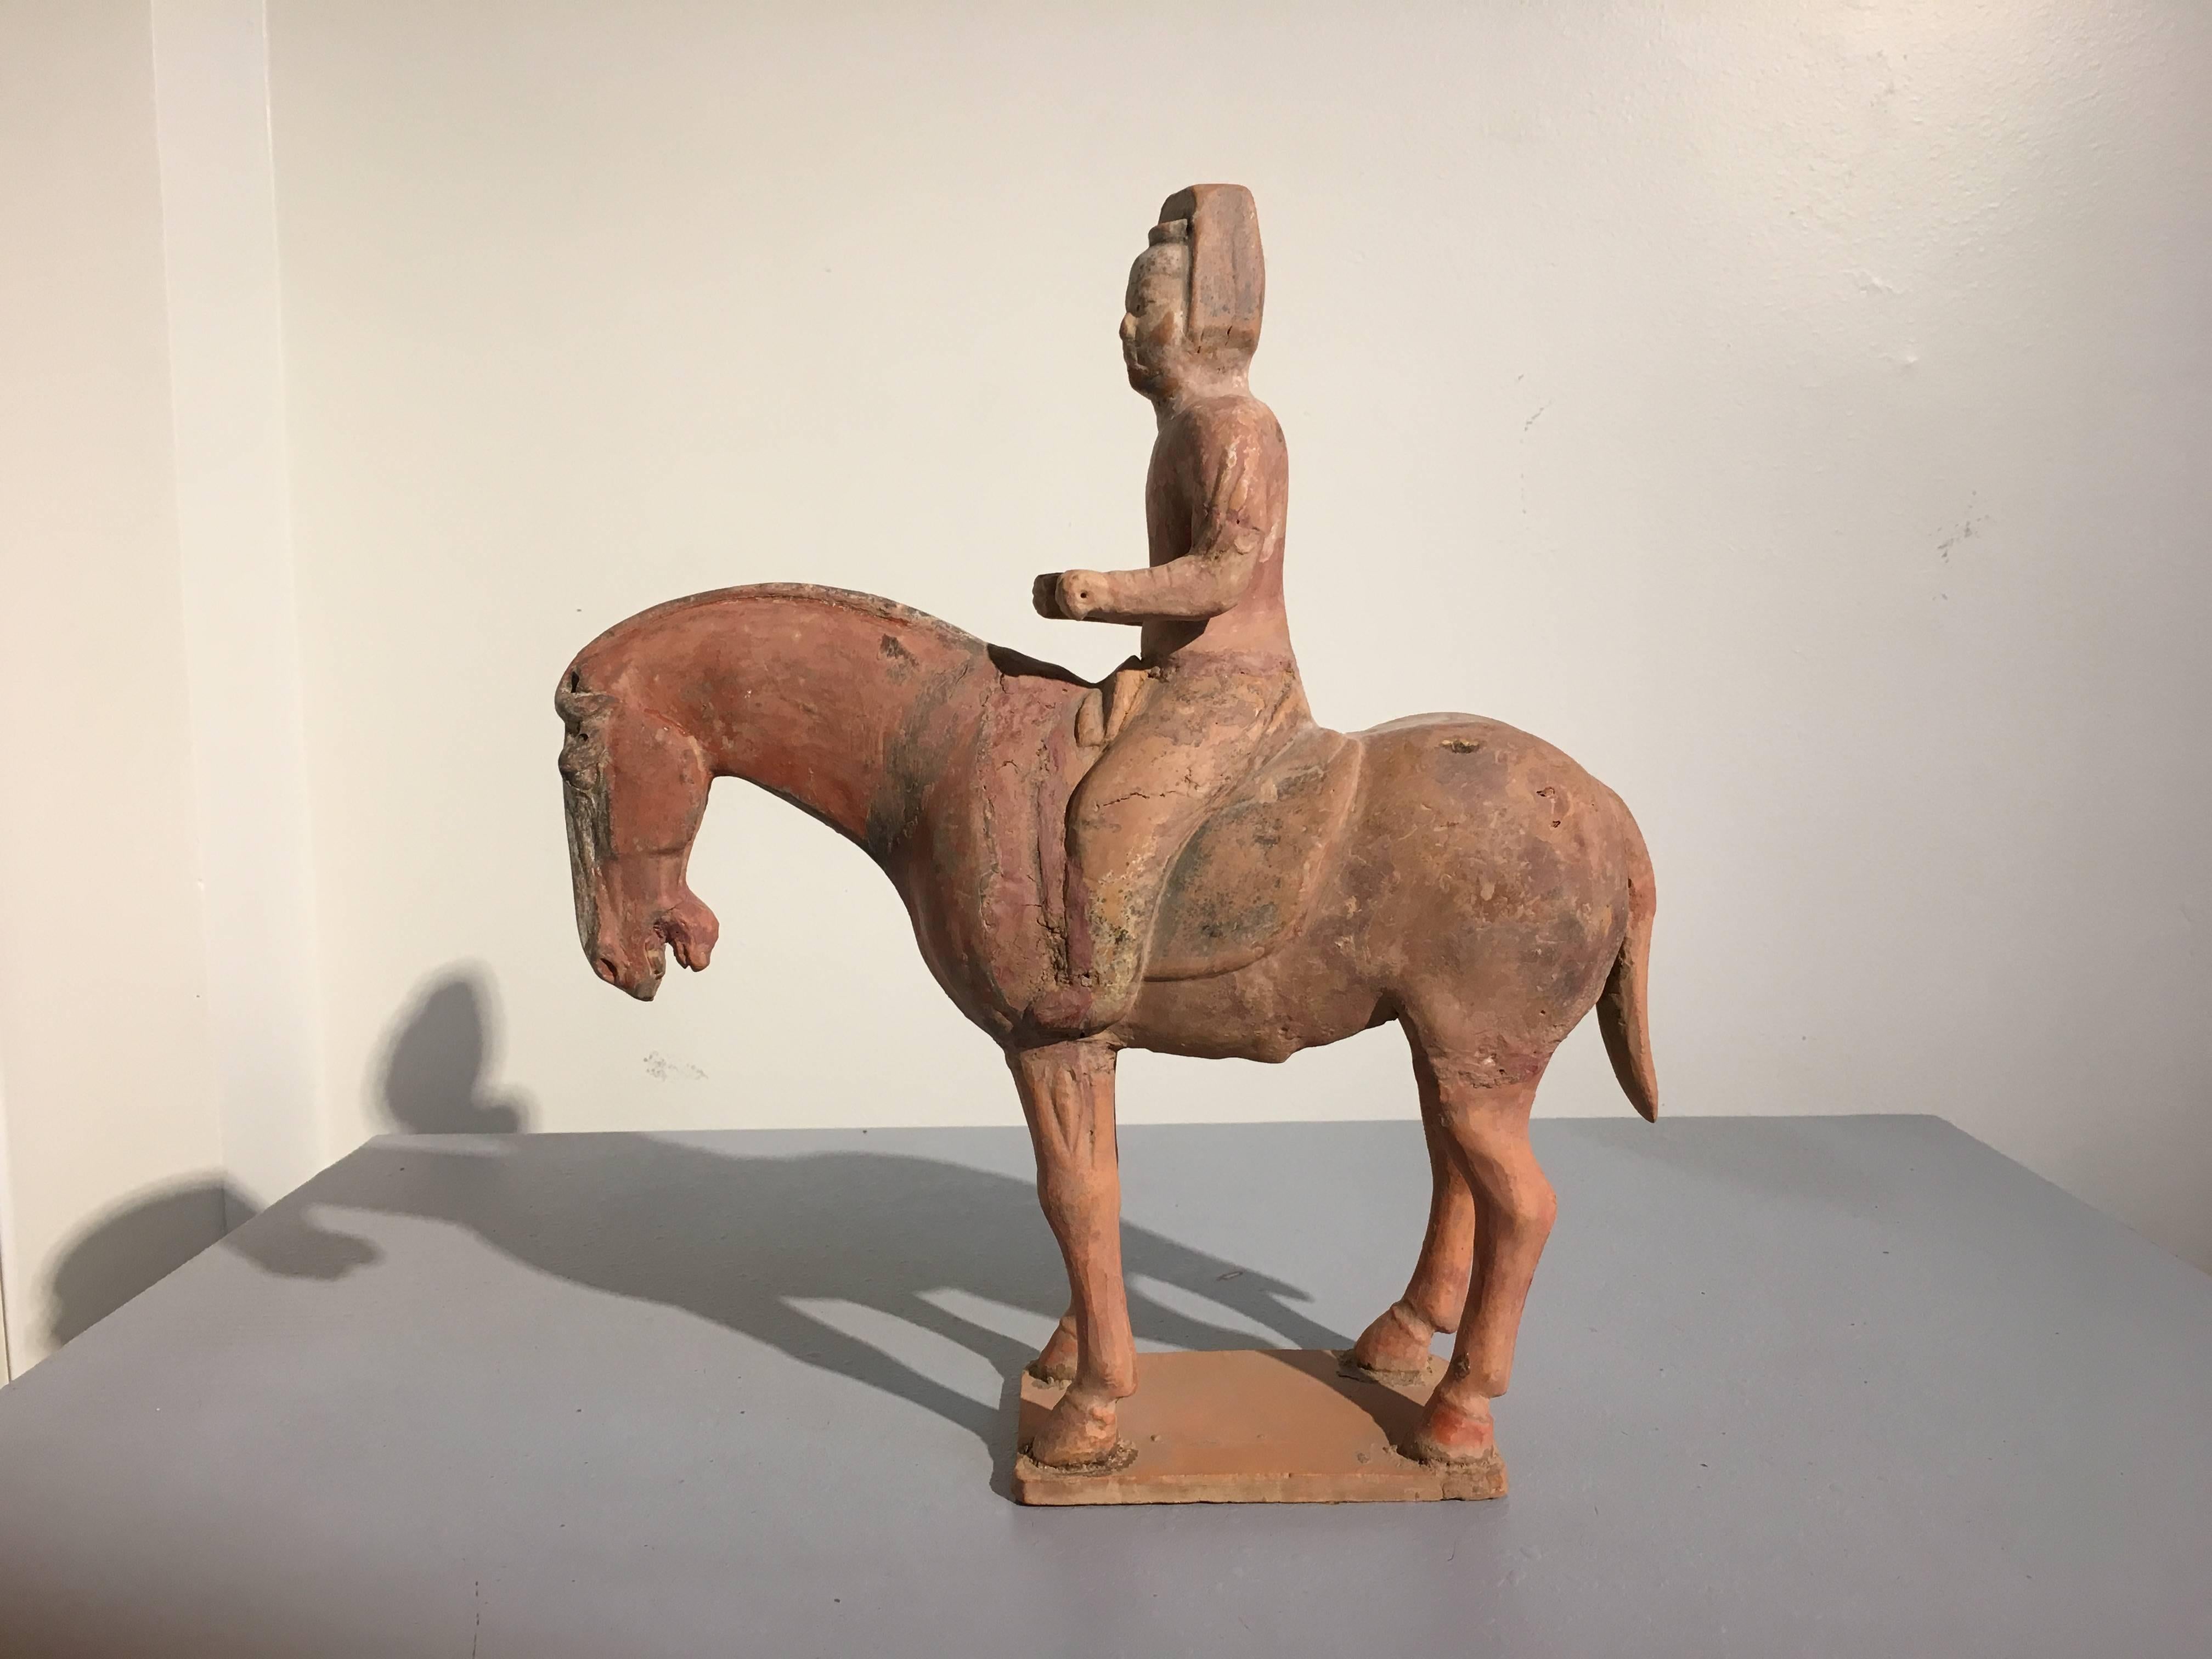 Charmante figurine en poterie peinte de la dynastie Tang représentant un cheval et son cavalier noble. TL testé par Oxford Authentication. 
Le cheval est représenté debout, la tête baissée et détendu. Le cavalier est assis droit sur sa selle, la